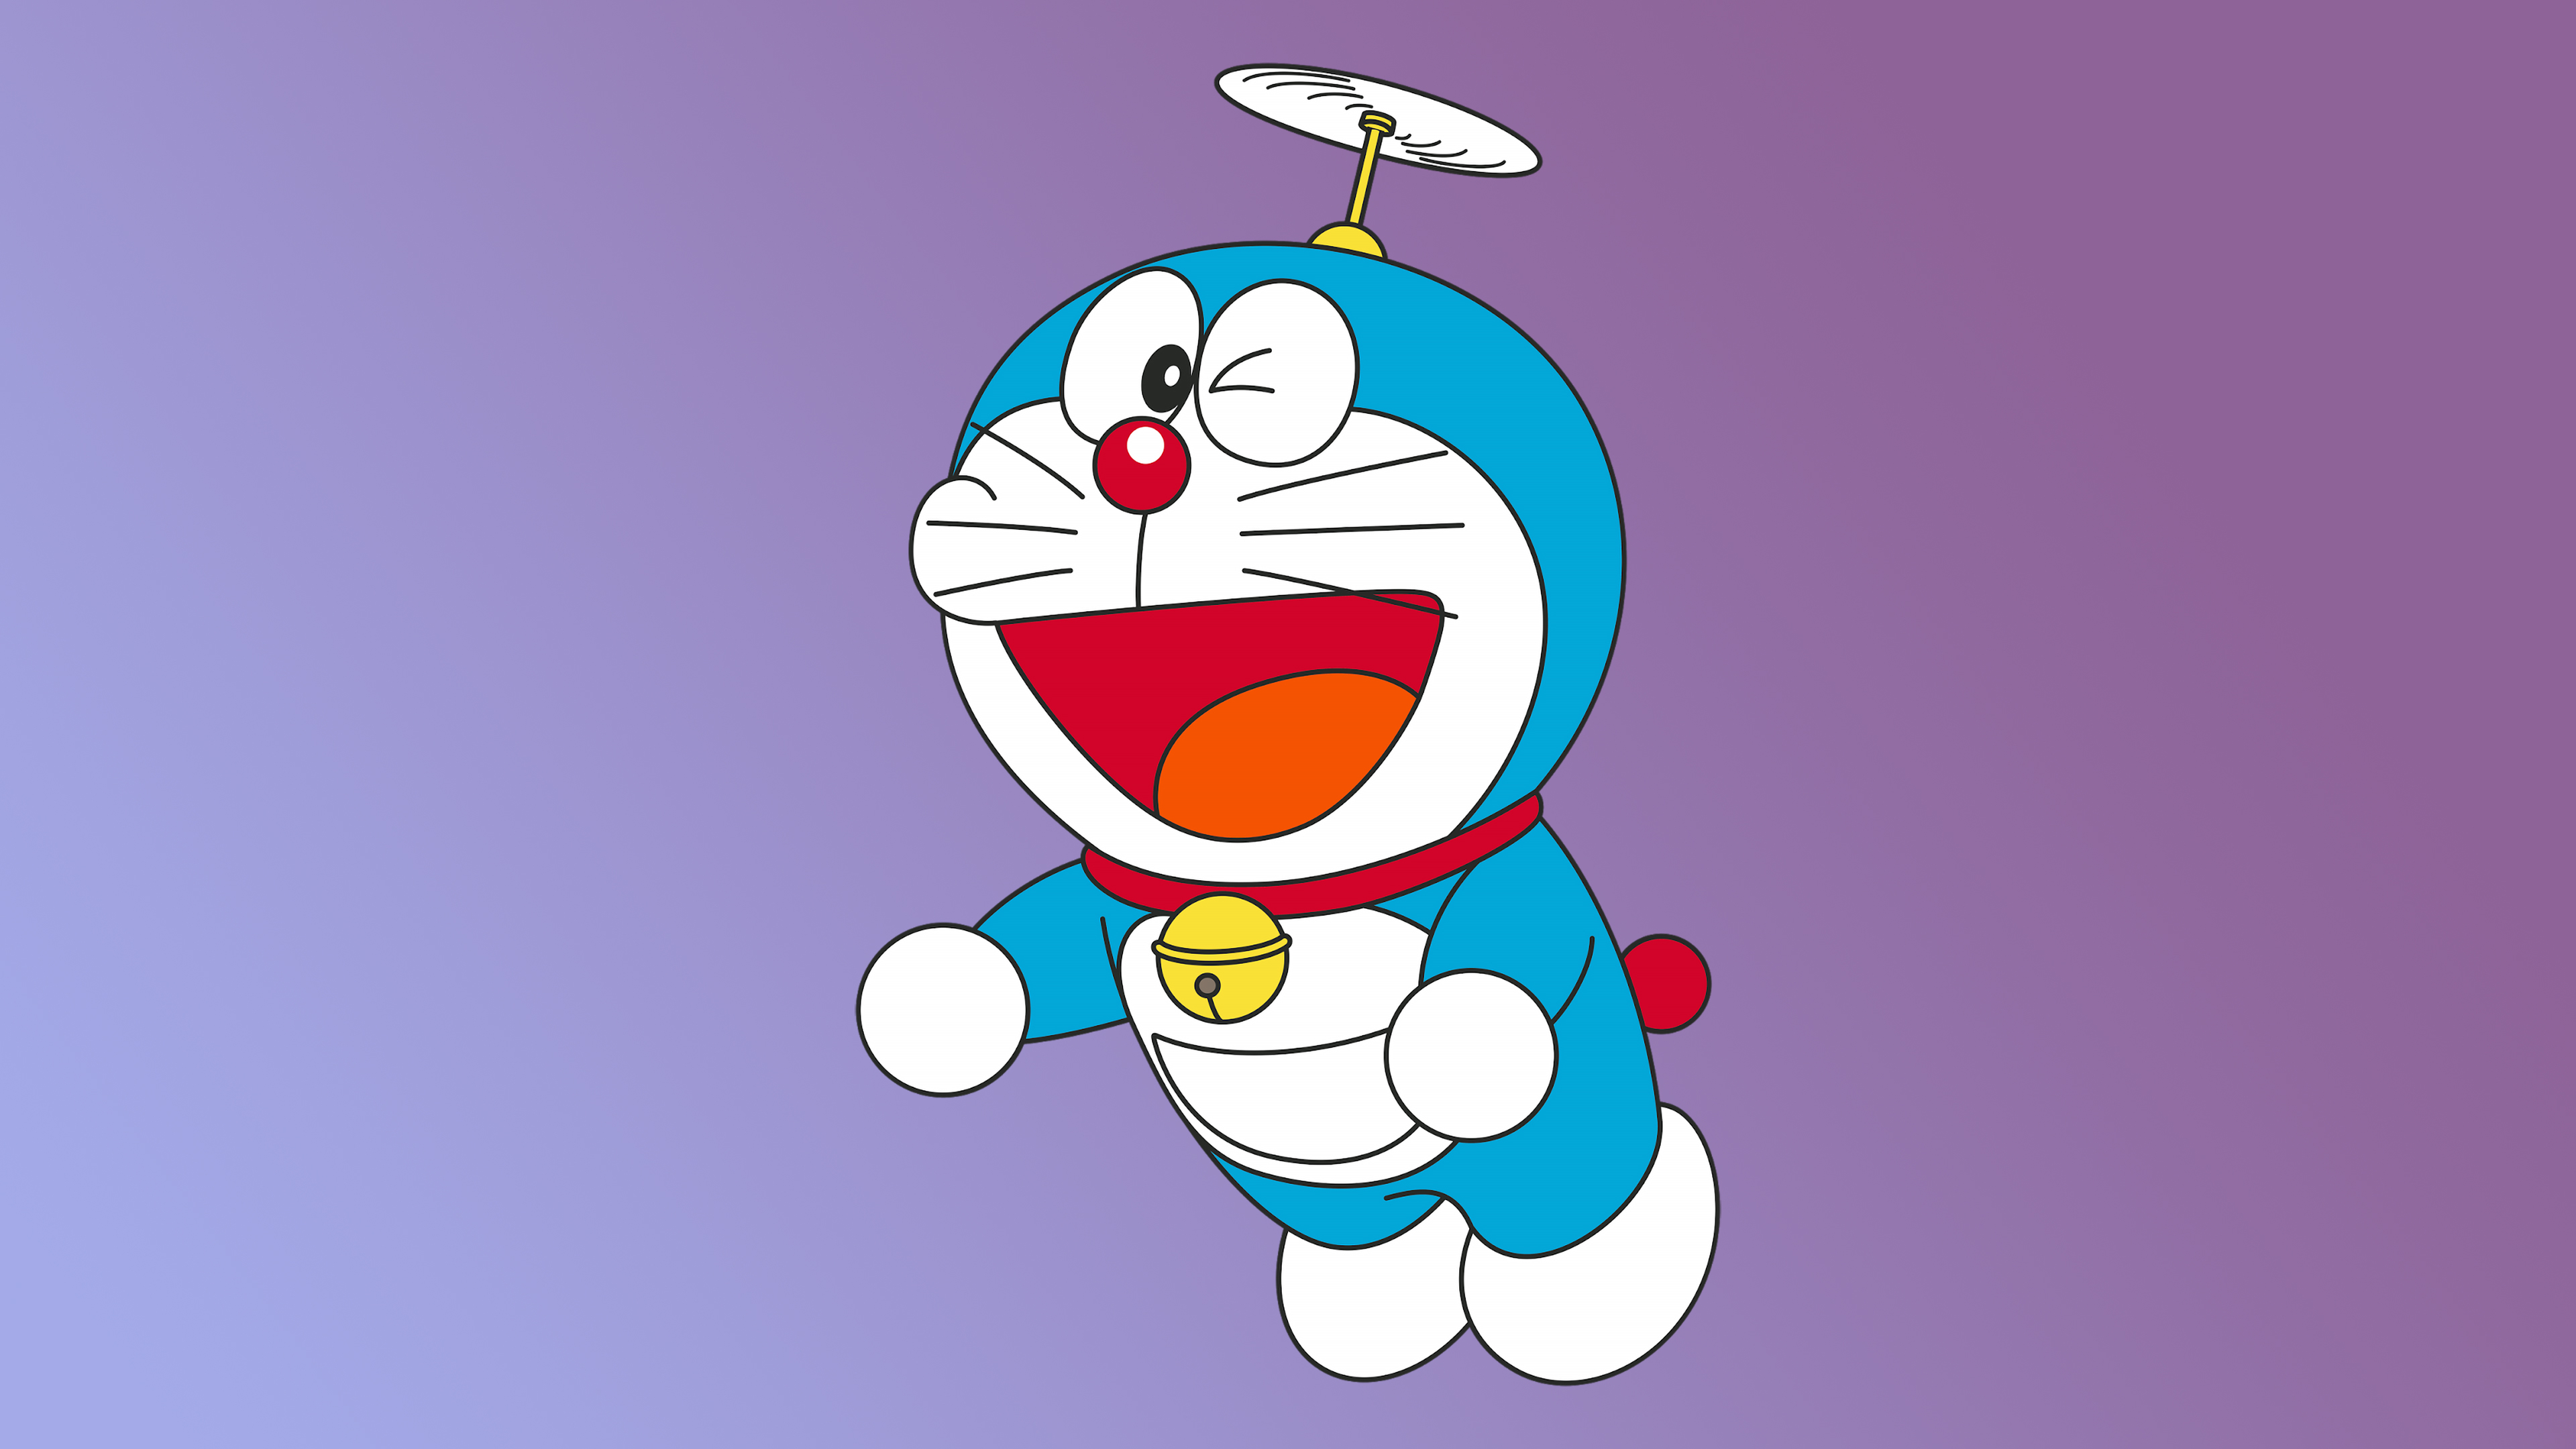  Doraemon  Minimal 4K  Wallpaper  HD Cartoon 4K  Wallpapers  